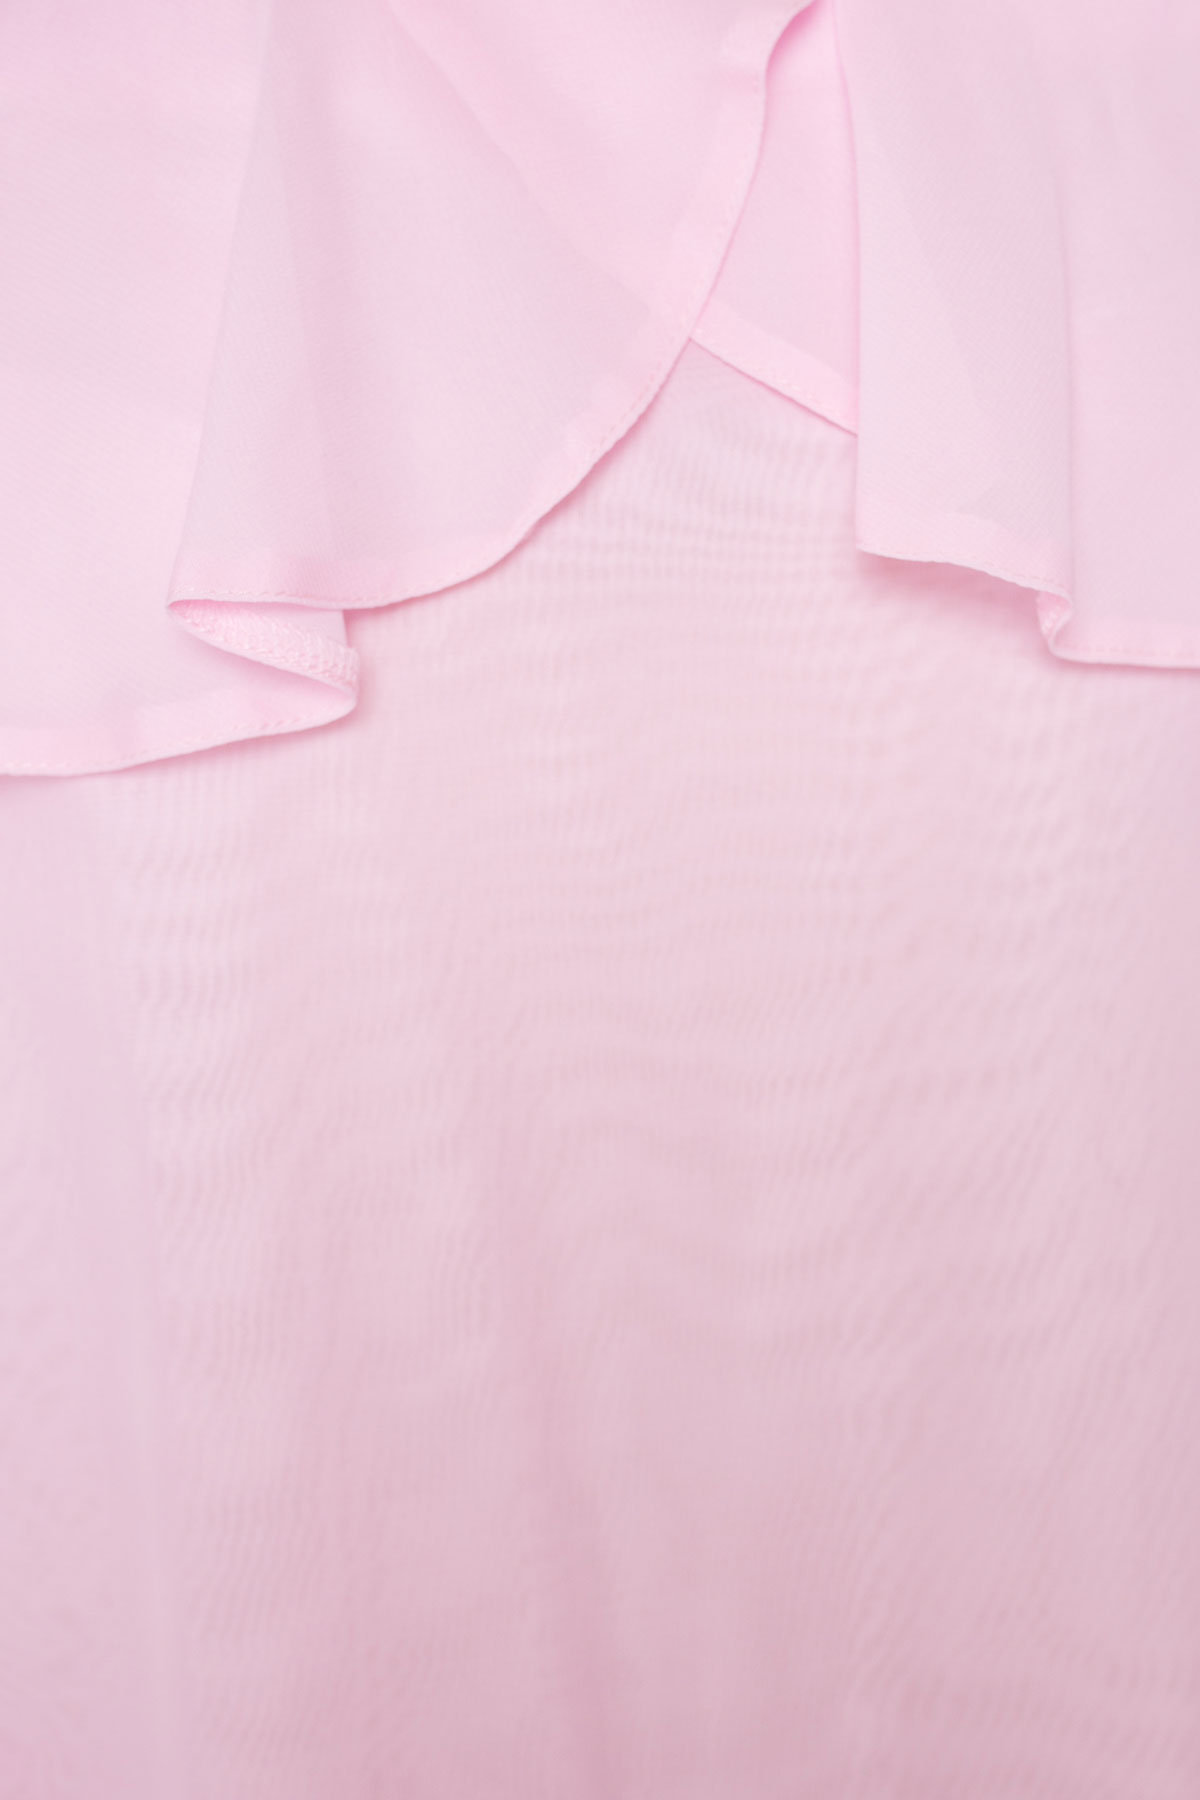 Платье Пикабу 5149 АРТ. 36234 Цвет: Розовый Светлый - фото 5, интернет магазин tm-modus.ru